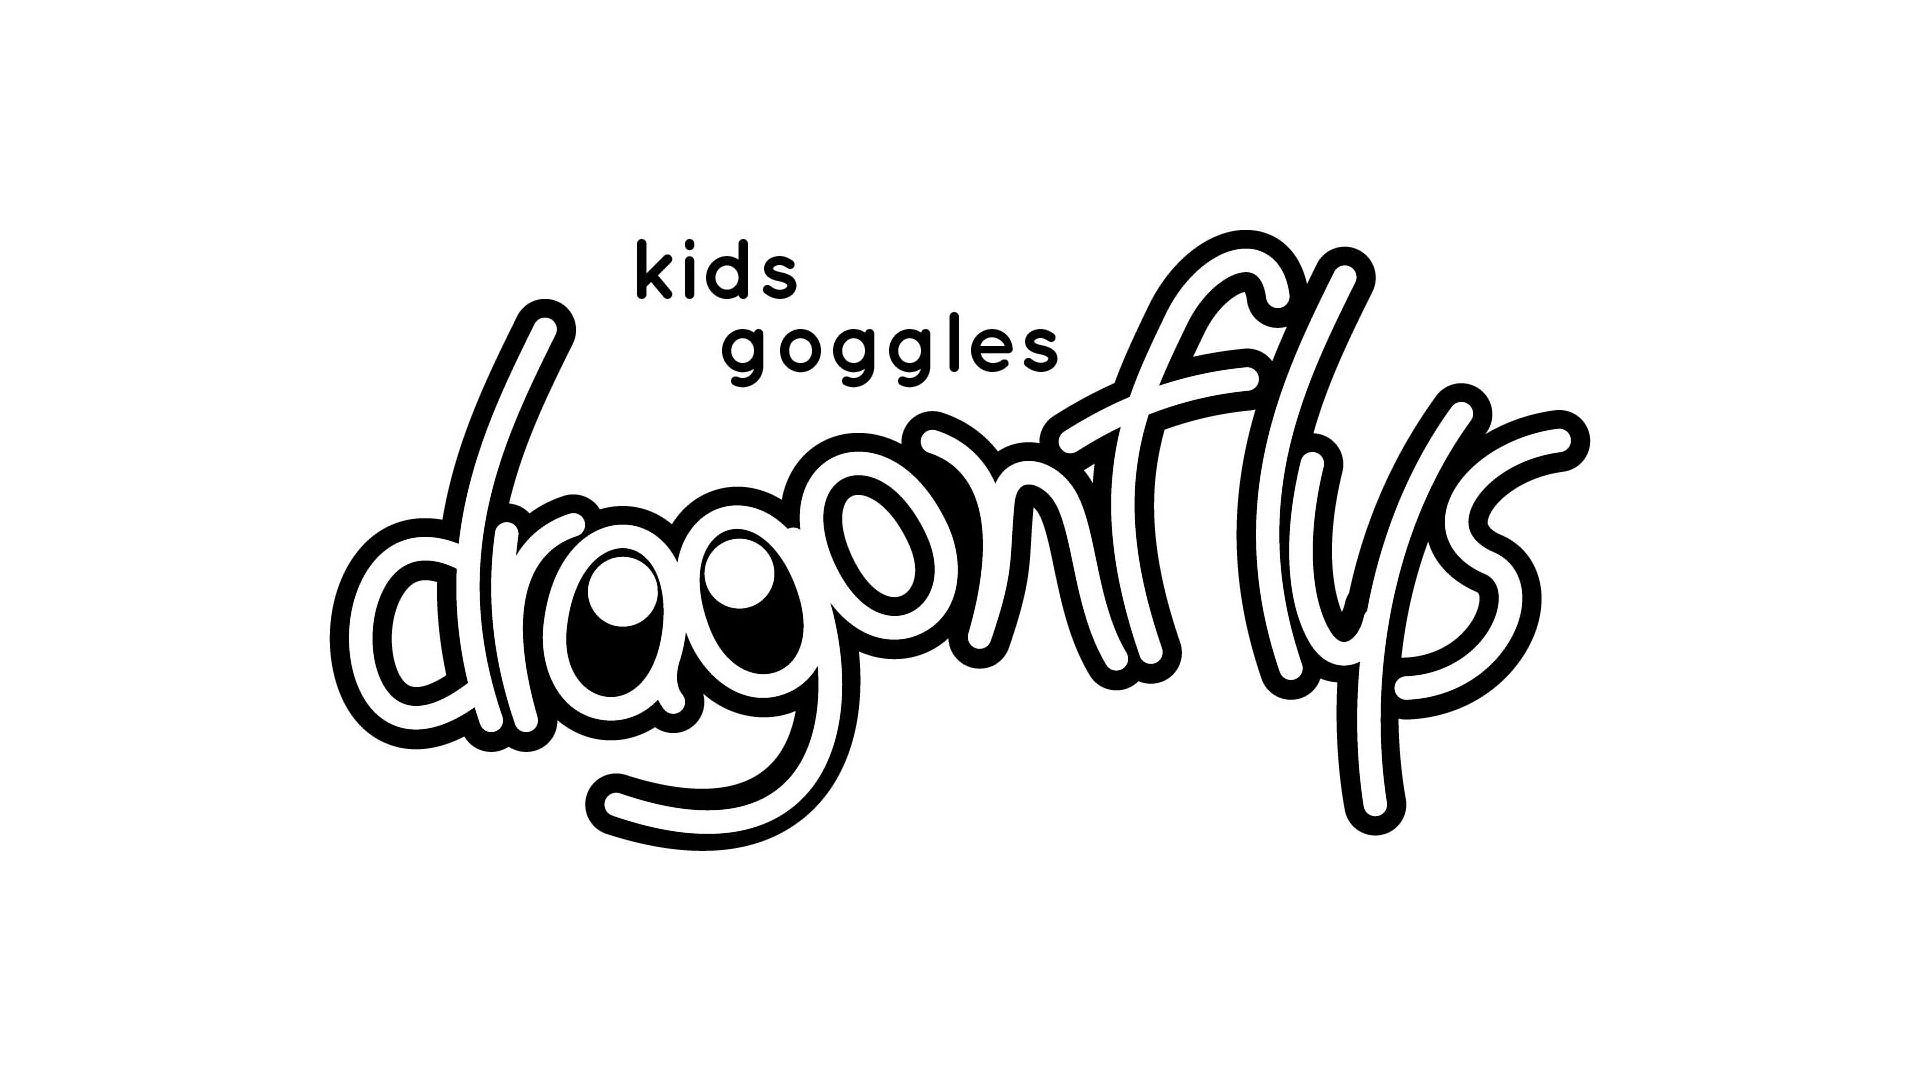  DRAGONFLYS KIDS GOGGLES